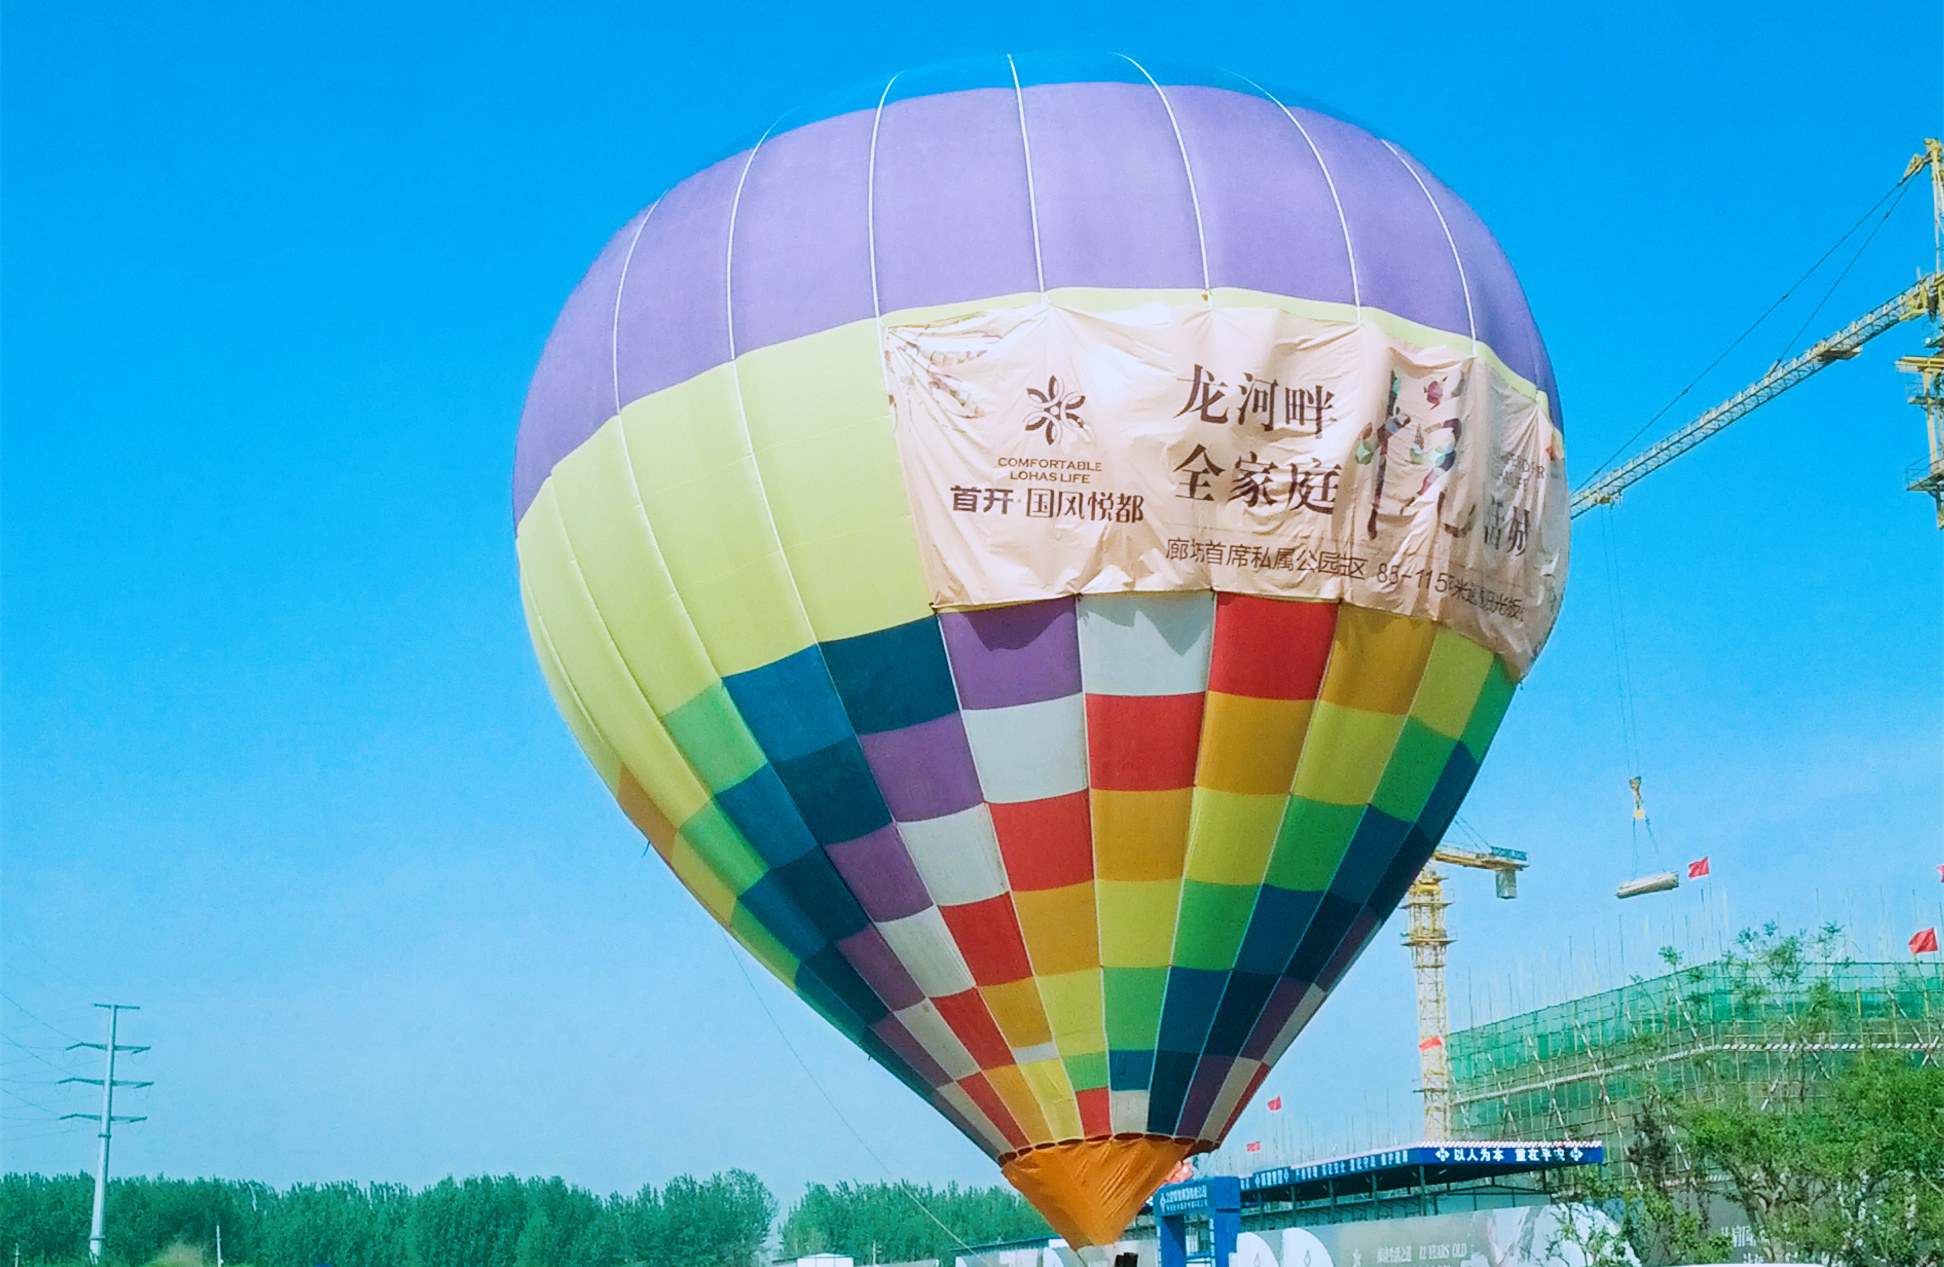 让你惊叹的空中热气球广告